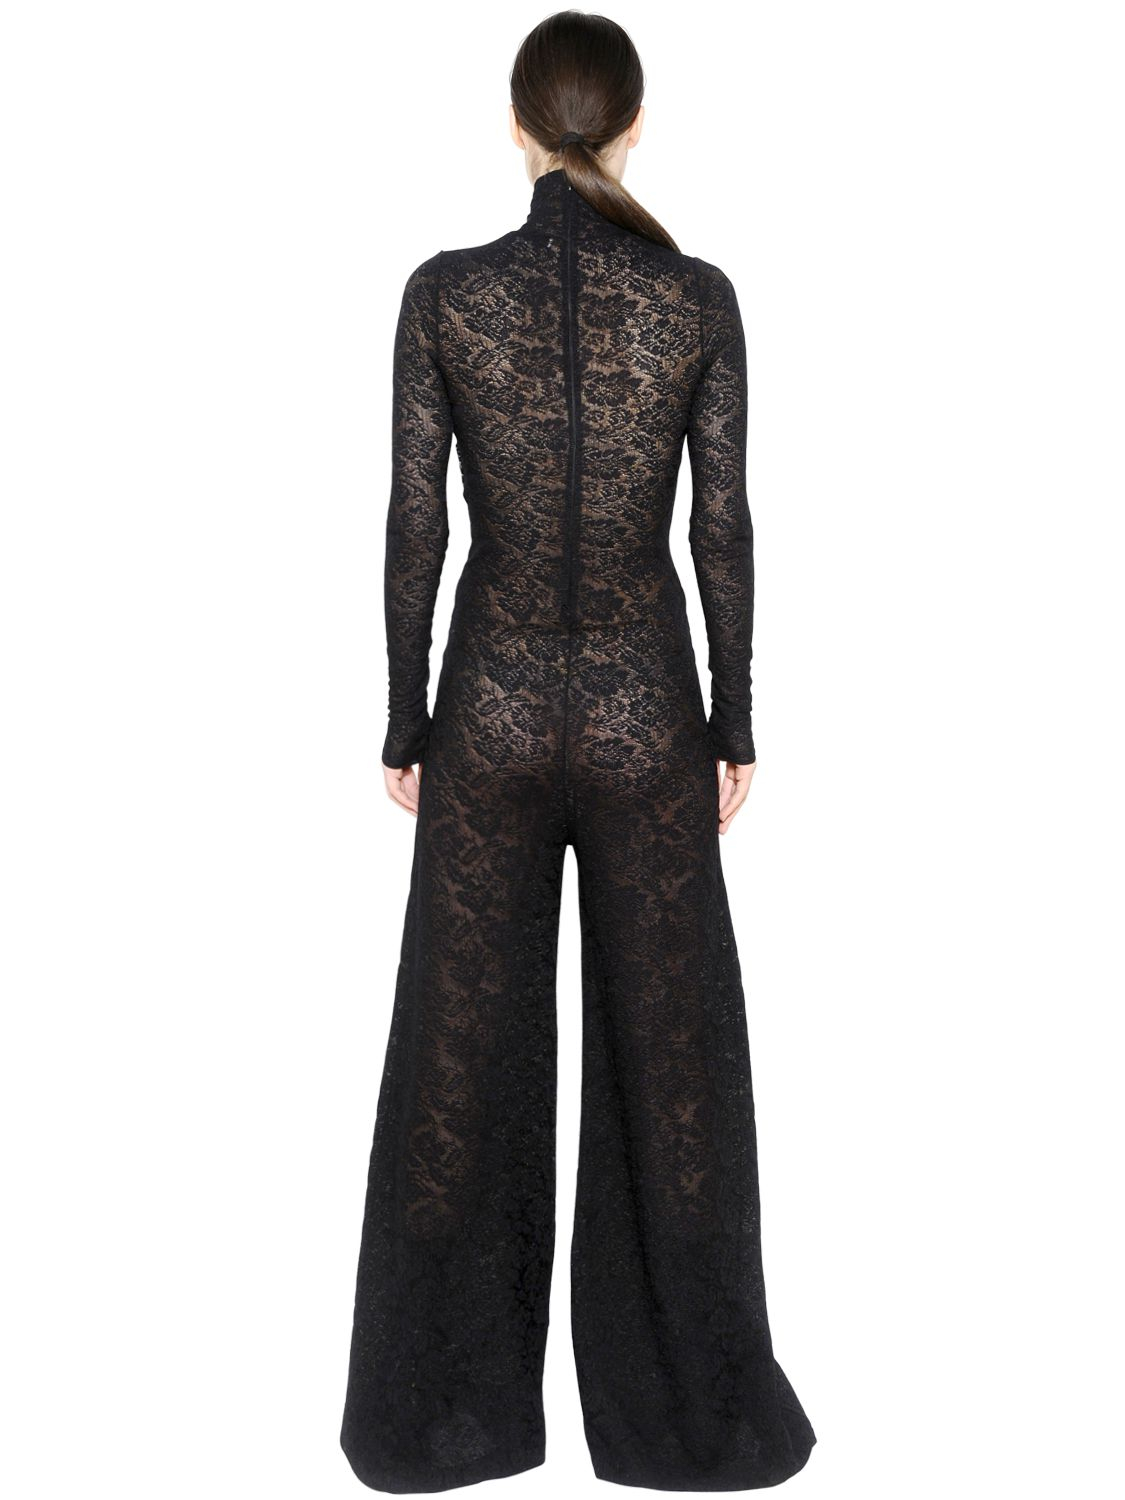 Stella McCartney Wool Lace Jumpsuit in Black - Lyst